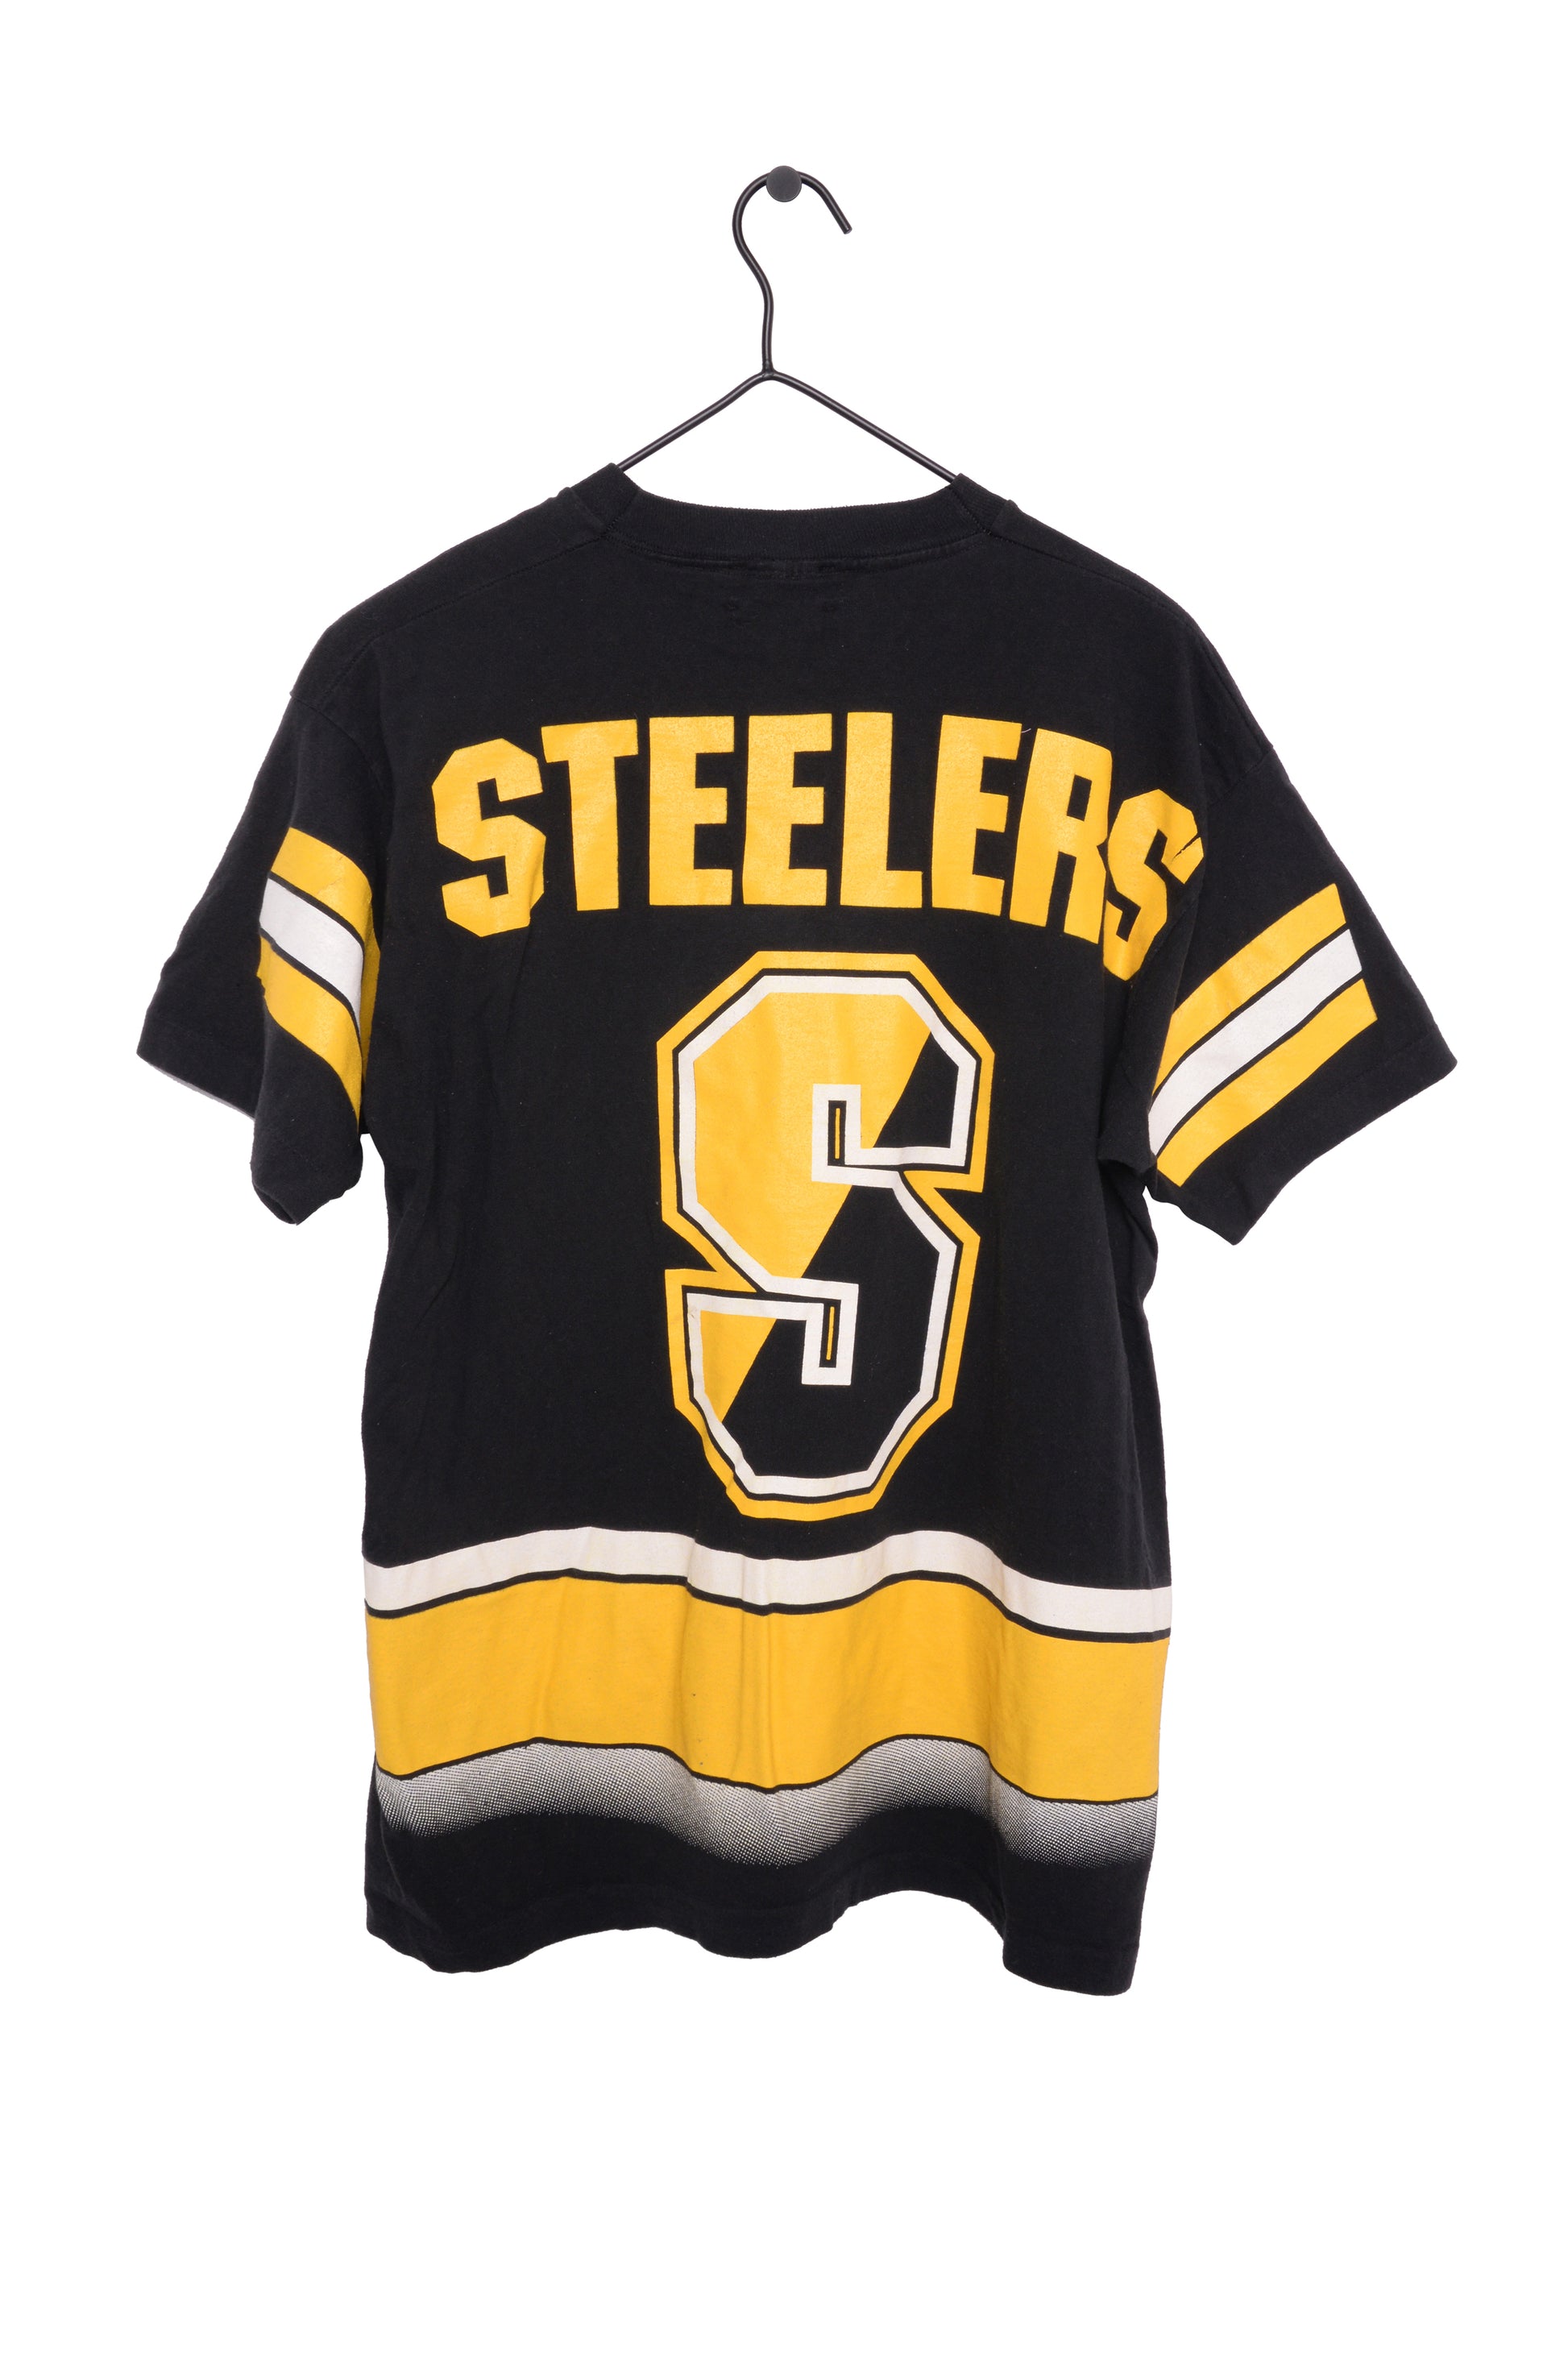 steelers 1994 jersey